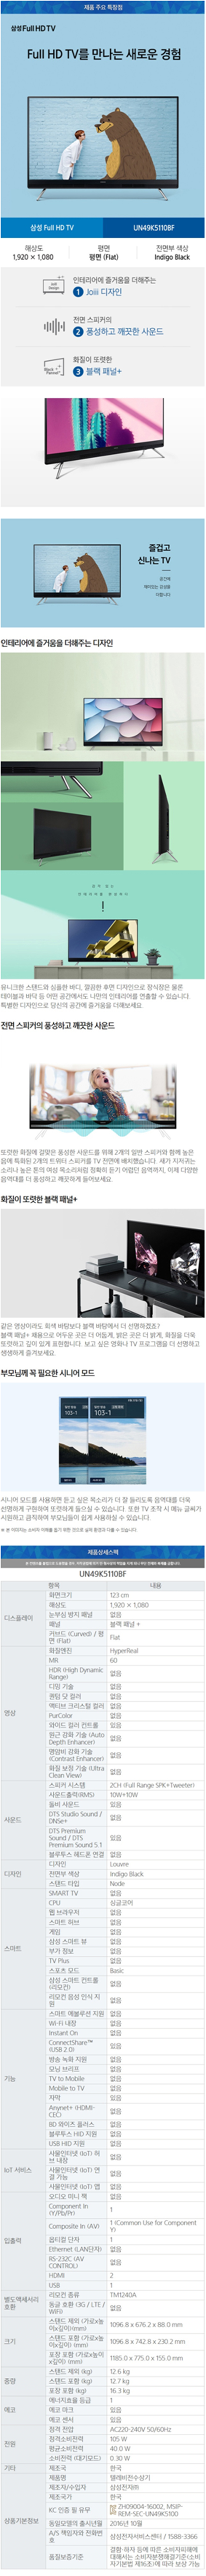 중앙케이블 - 삼성 49인치 LED TV (UN49K5110BF) 상세보기